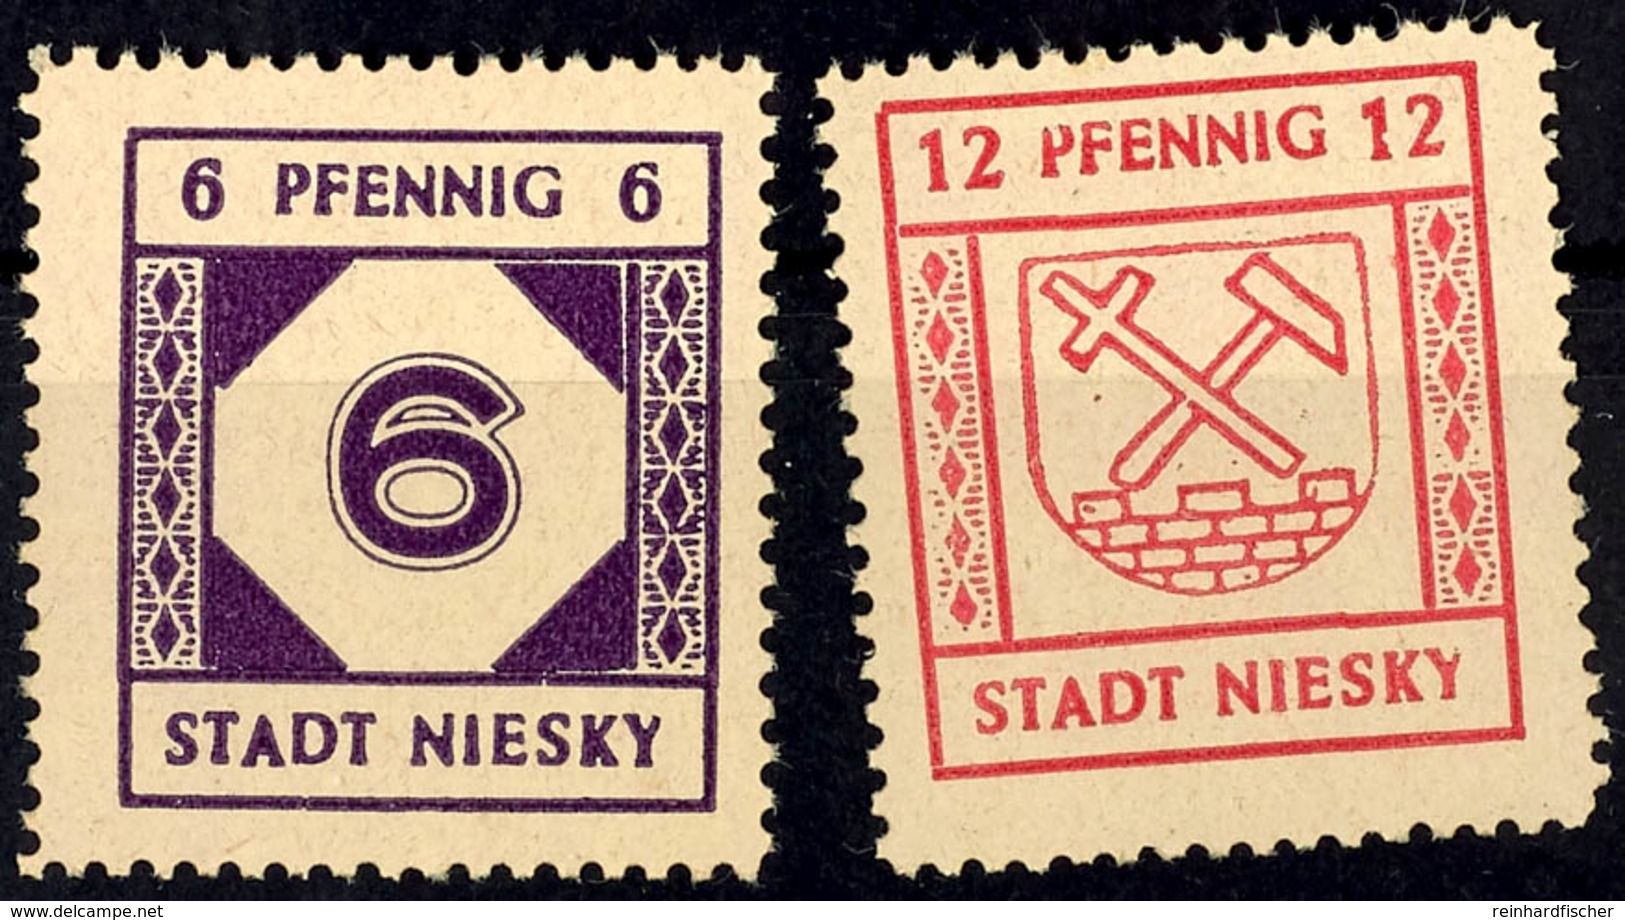 6 Pfg Und 12 Pfg Freimarken Auf Hellgelbbraunem Papier, 2 Postfrische Kabinettstücke, Mi. 350.-, Katalog: 1/2 ** - Niesky